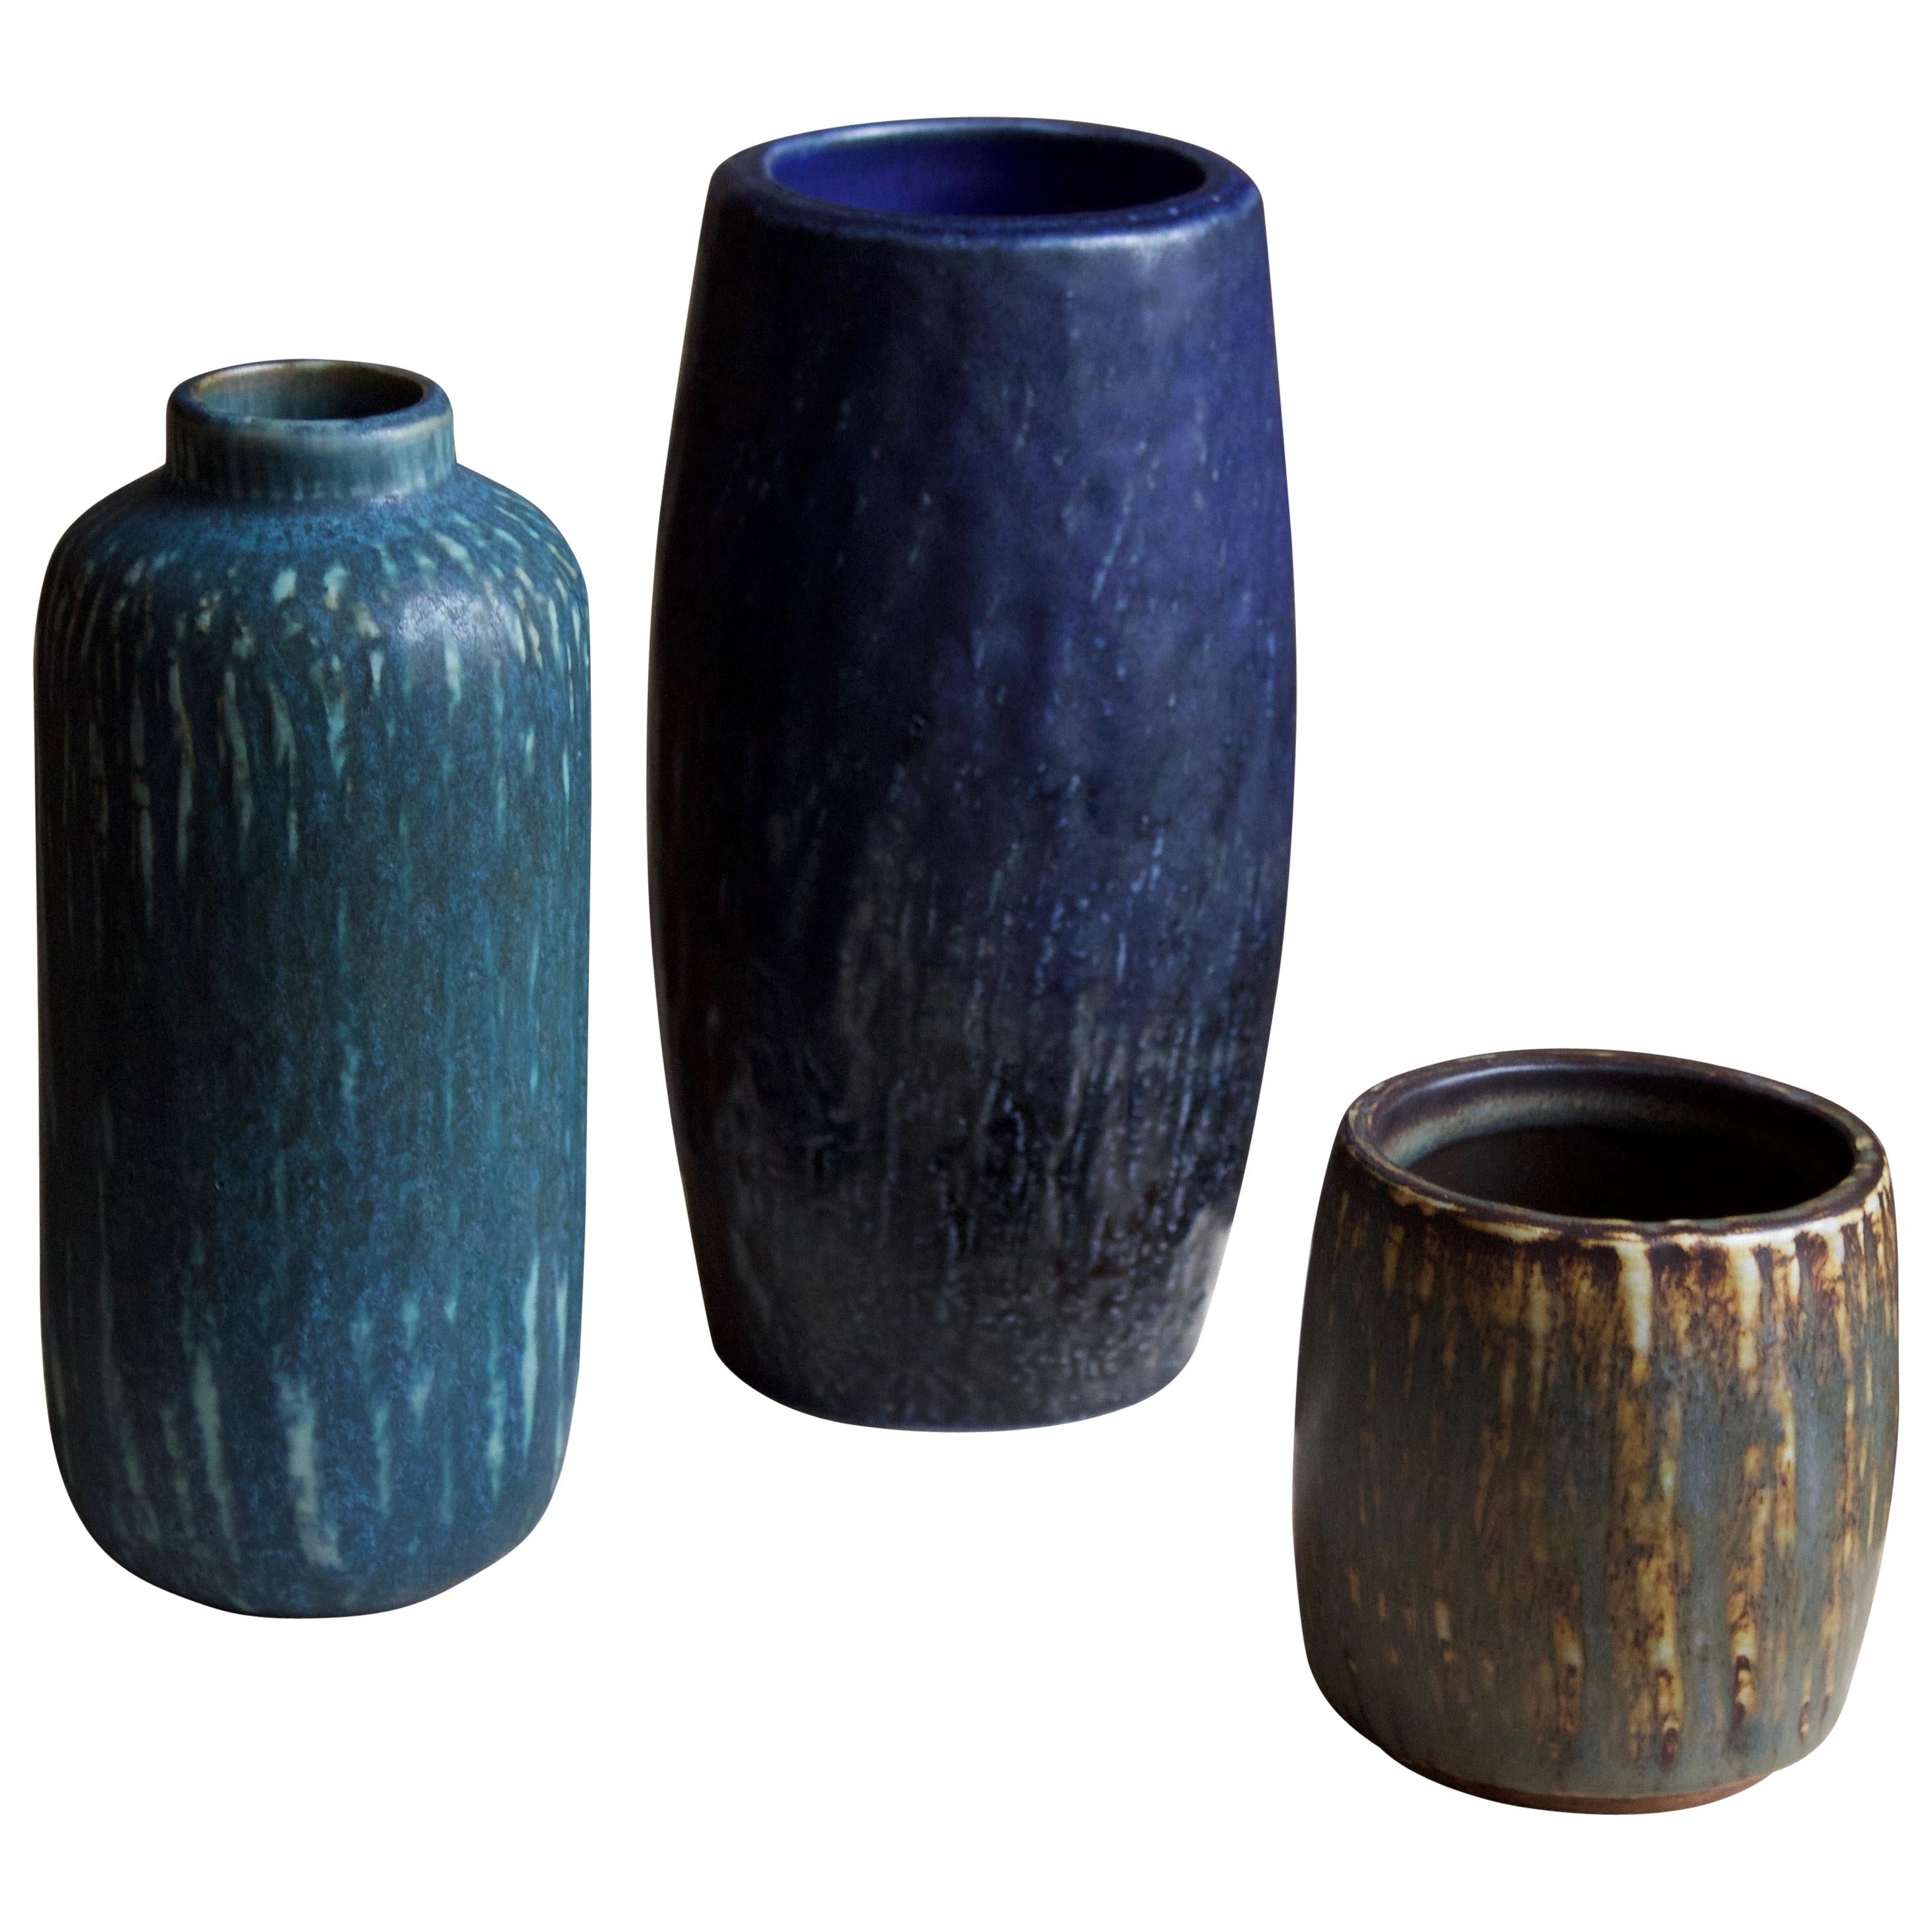 Gunnar Nylund, Vases or Vessels, Glazed Stoneware, Rörstand, Sweden, 1950s